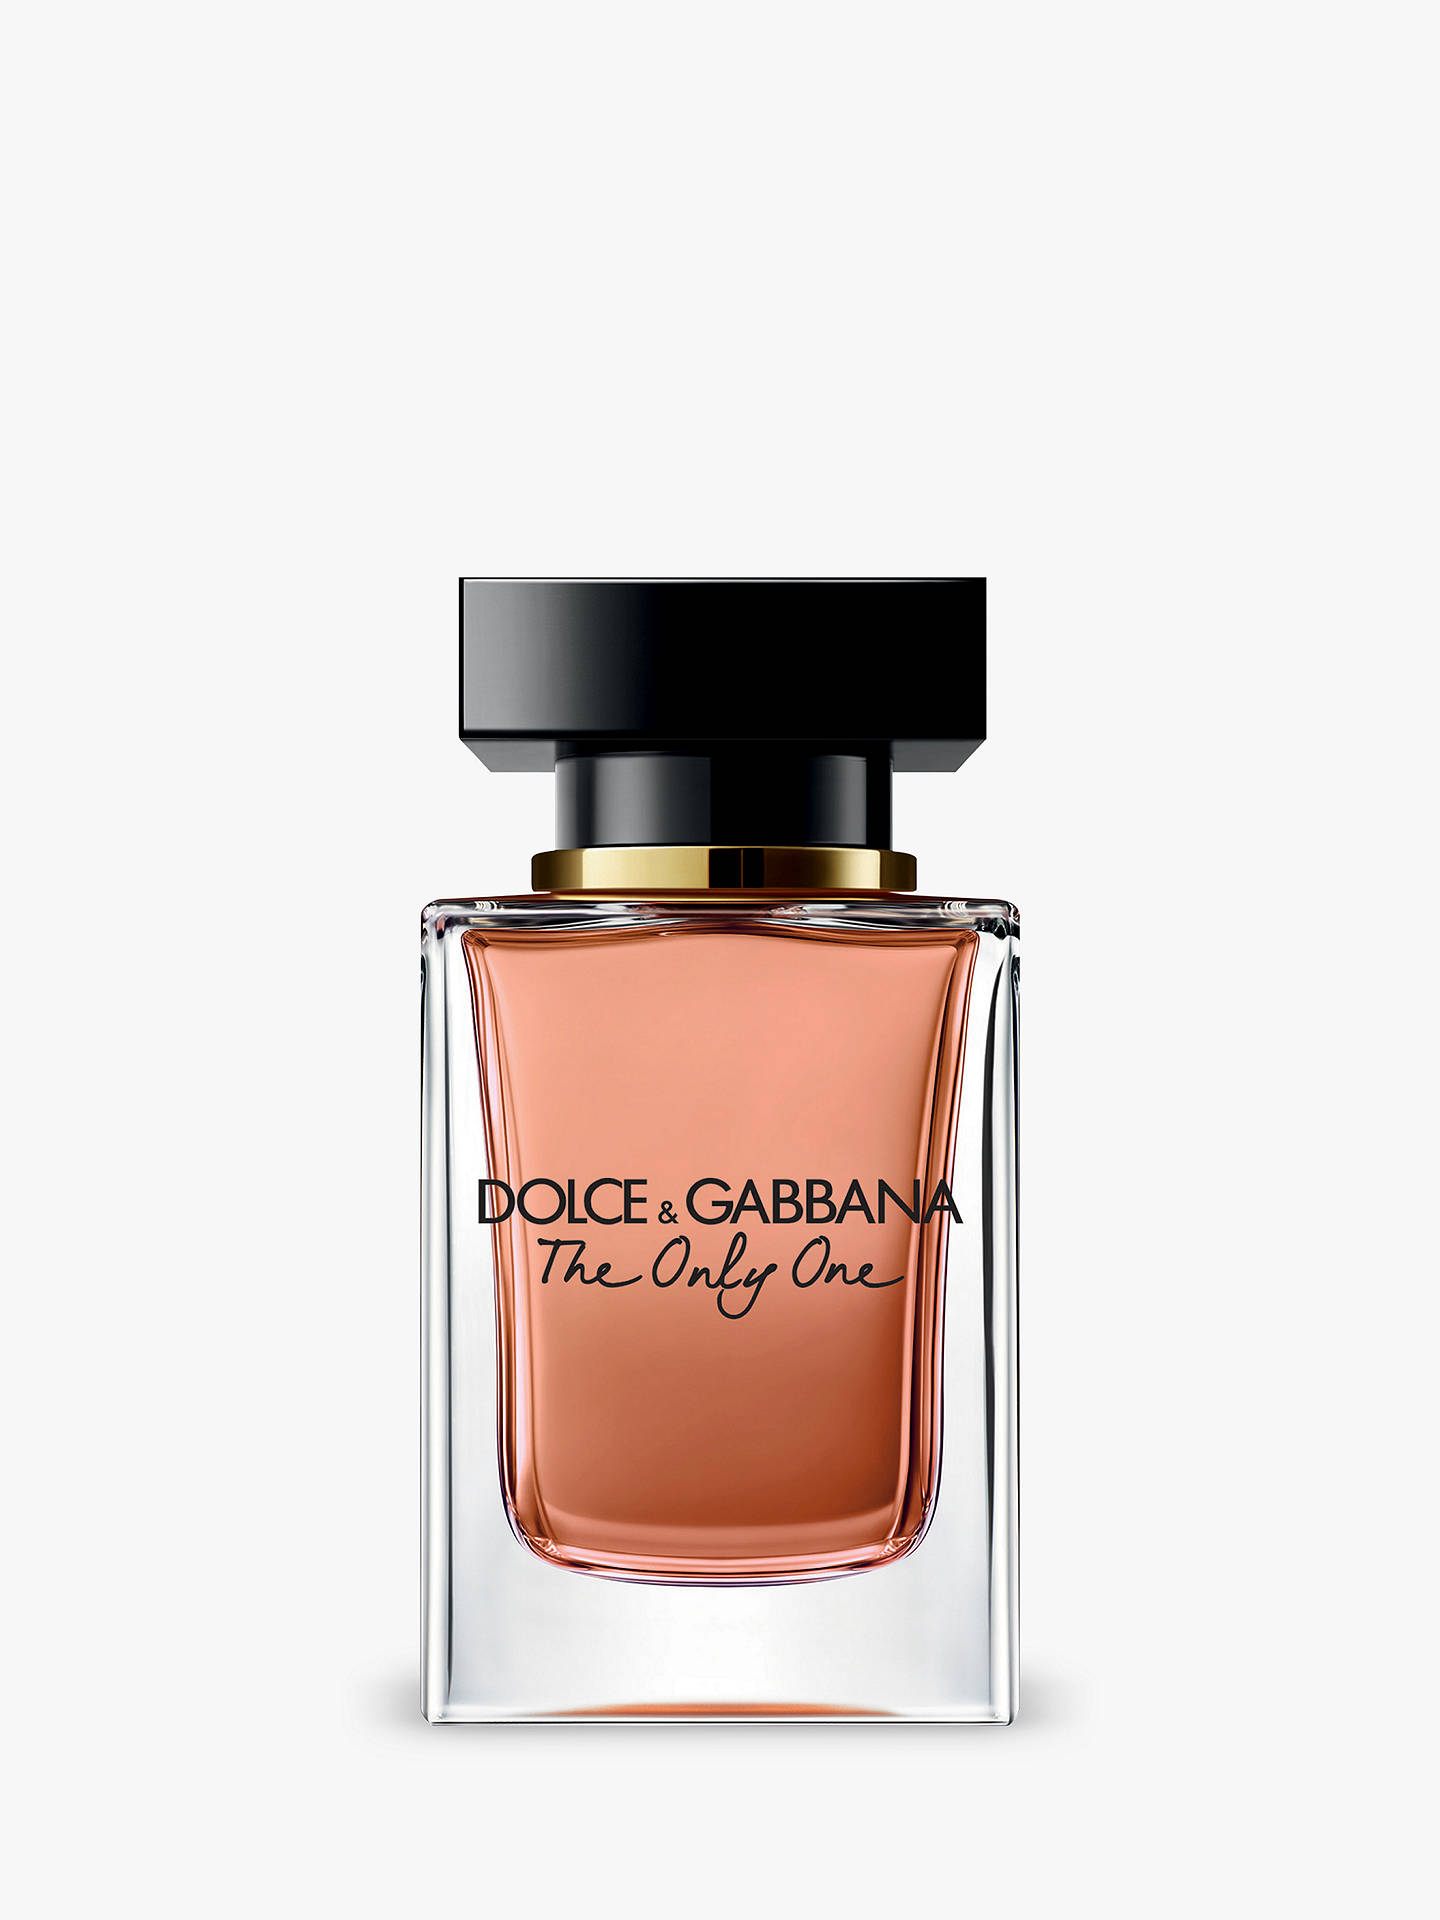 Dolce & Gabbana The Only One Eau de Parfum at John Lewis & Partners